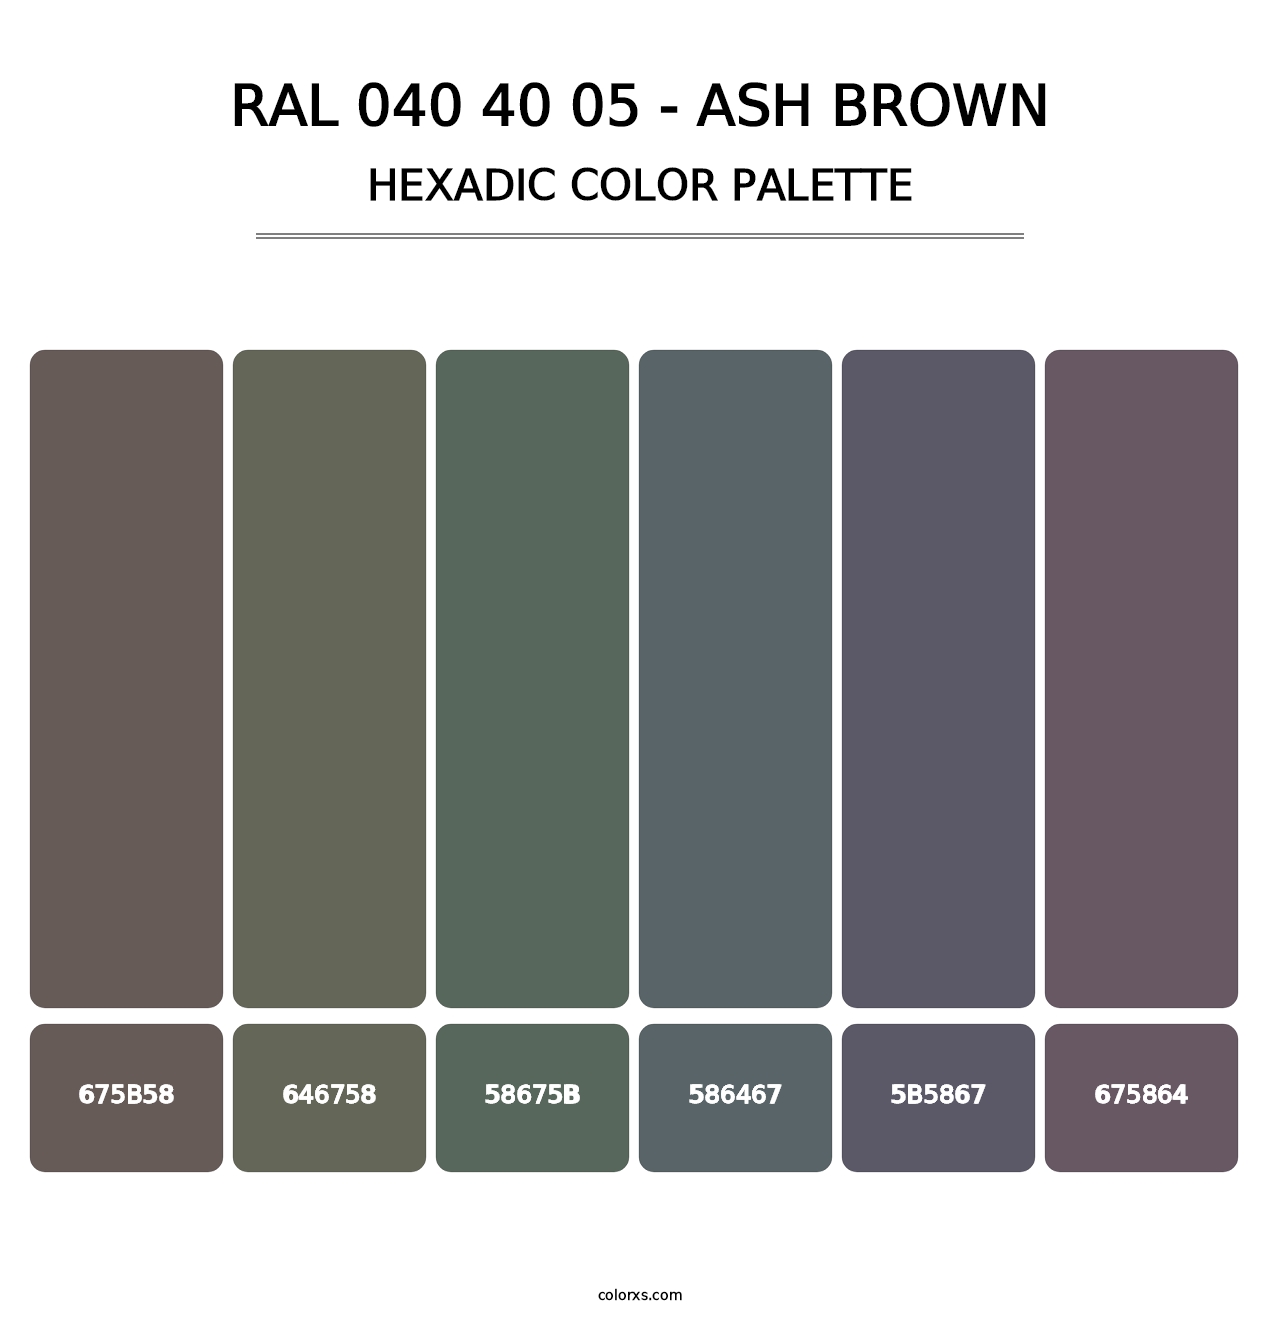 RAL 040 40 05 - Ash Brown - Hexadic Color Palette